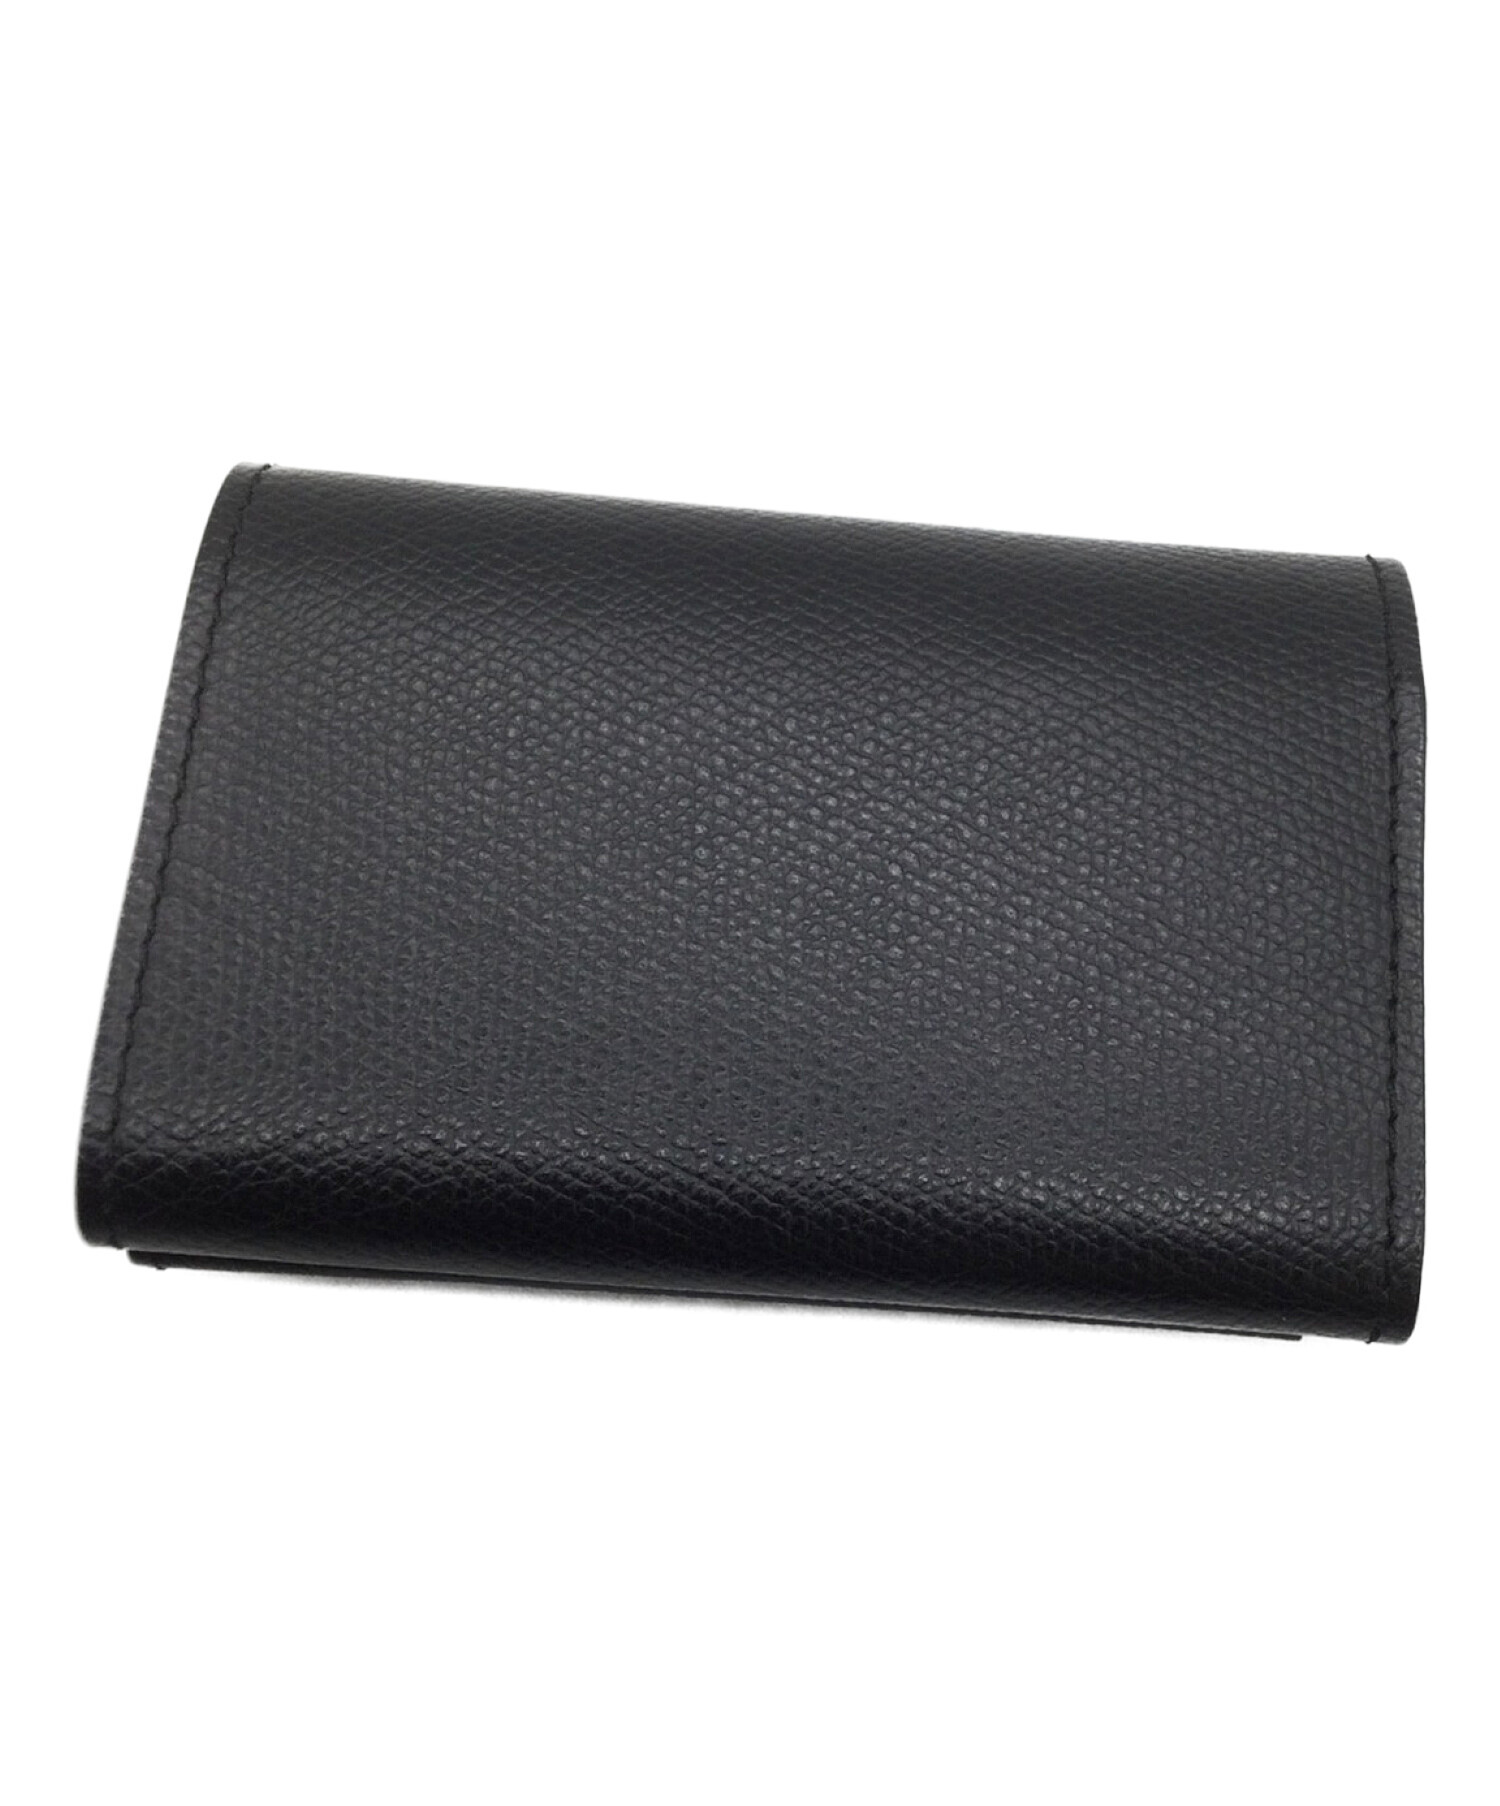 中古・古着通販】abrasus (アブラサス) 小さい財布 abrasus 未使用品 